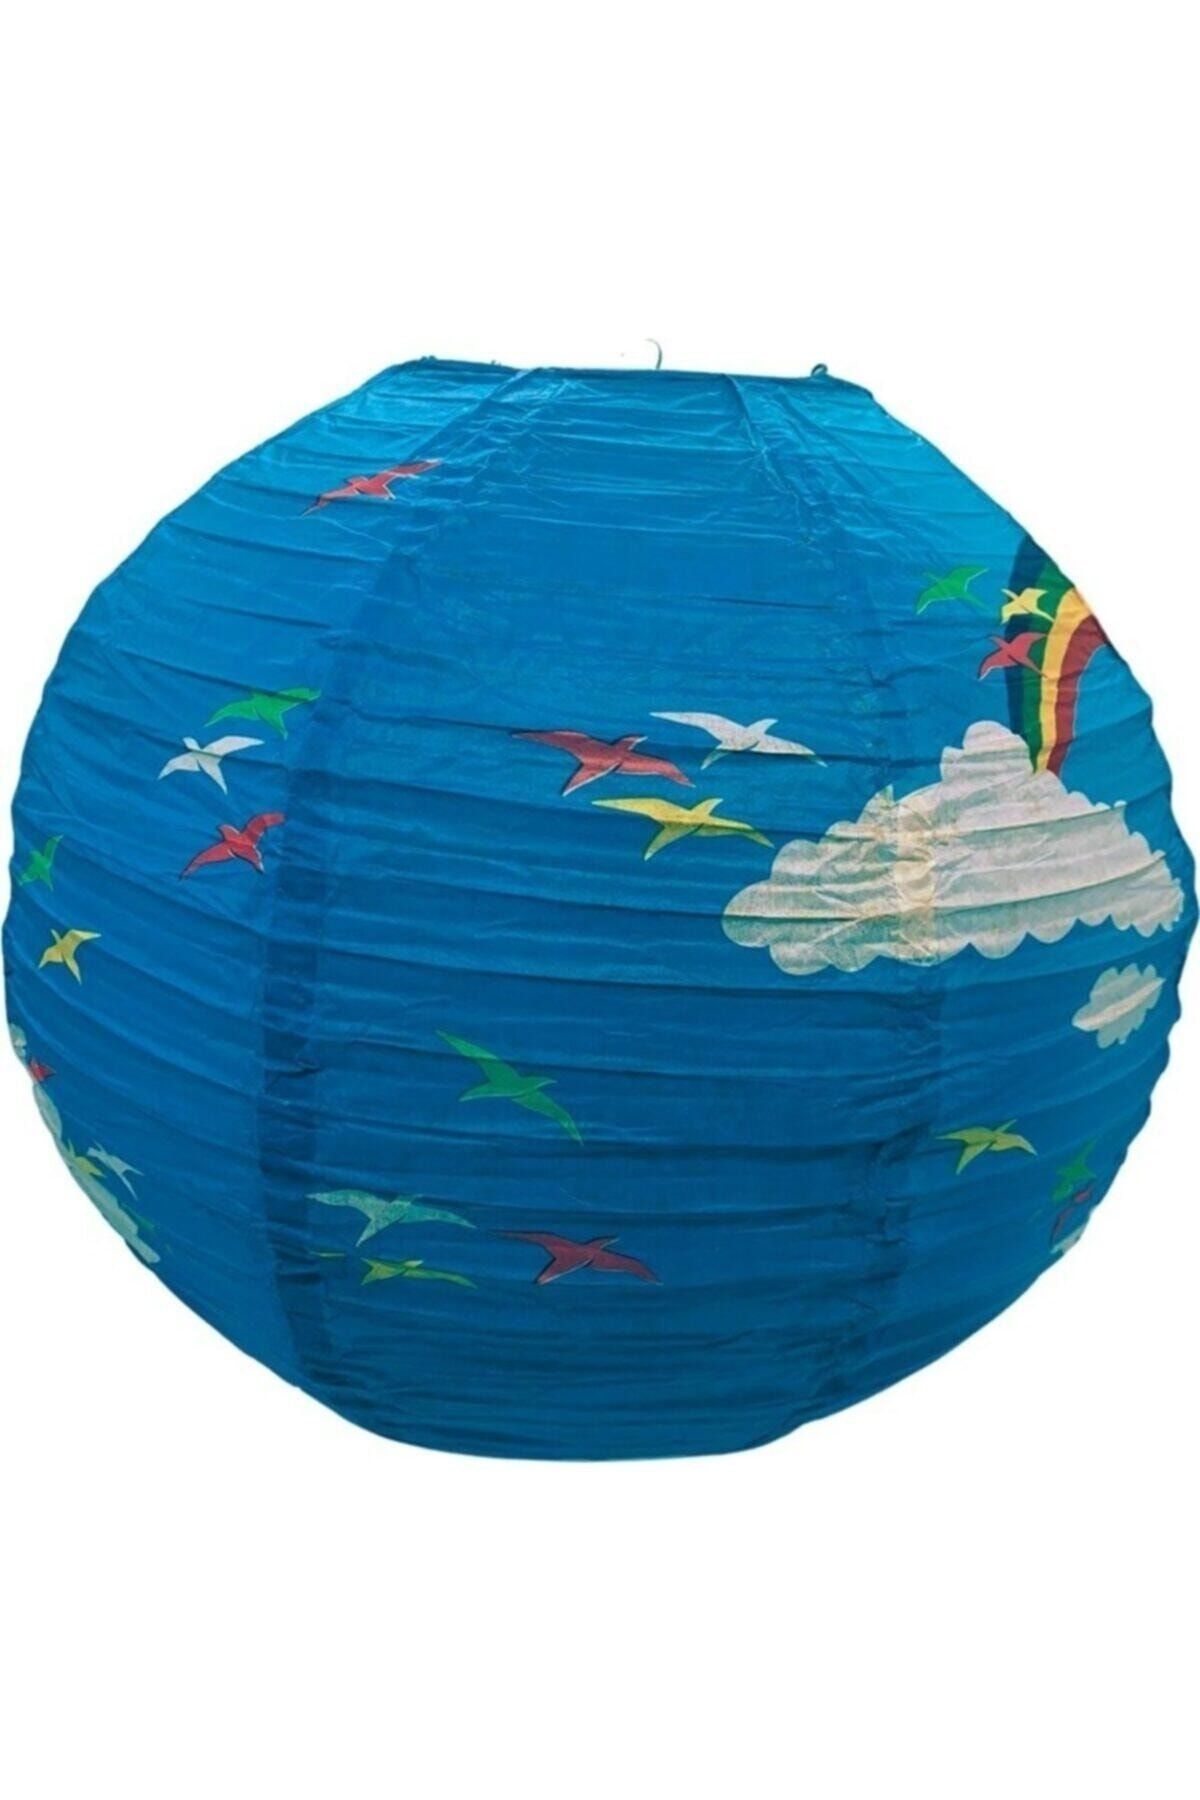 pazariz Japon Feneri - Mavi Gökkuşağı Desenli Asma Süs Avize - 40 cm